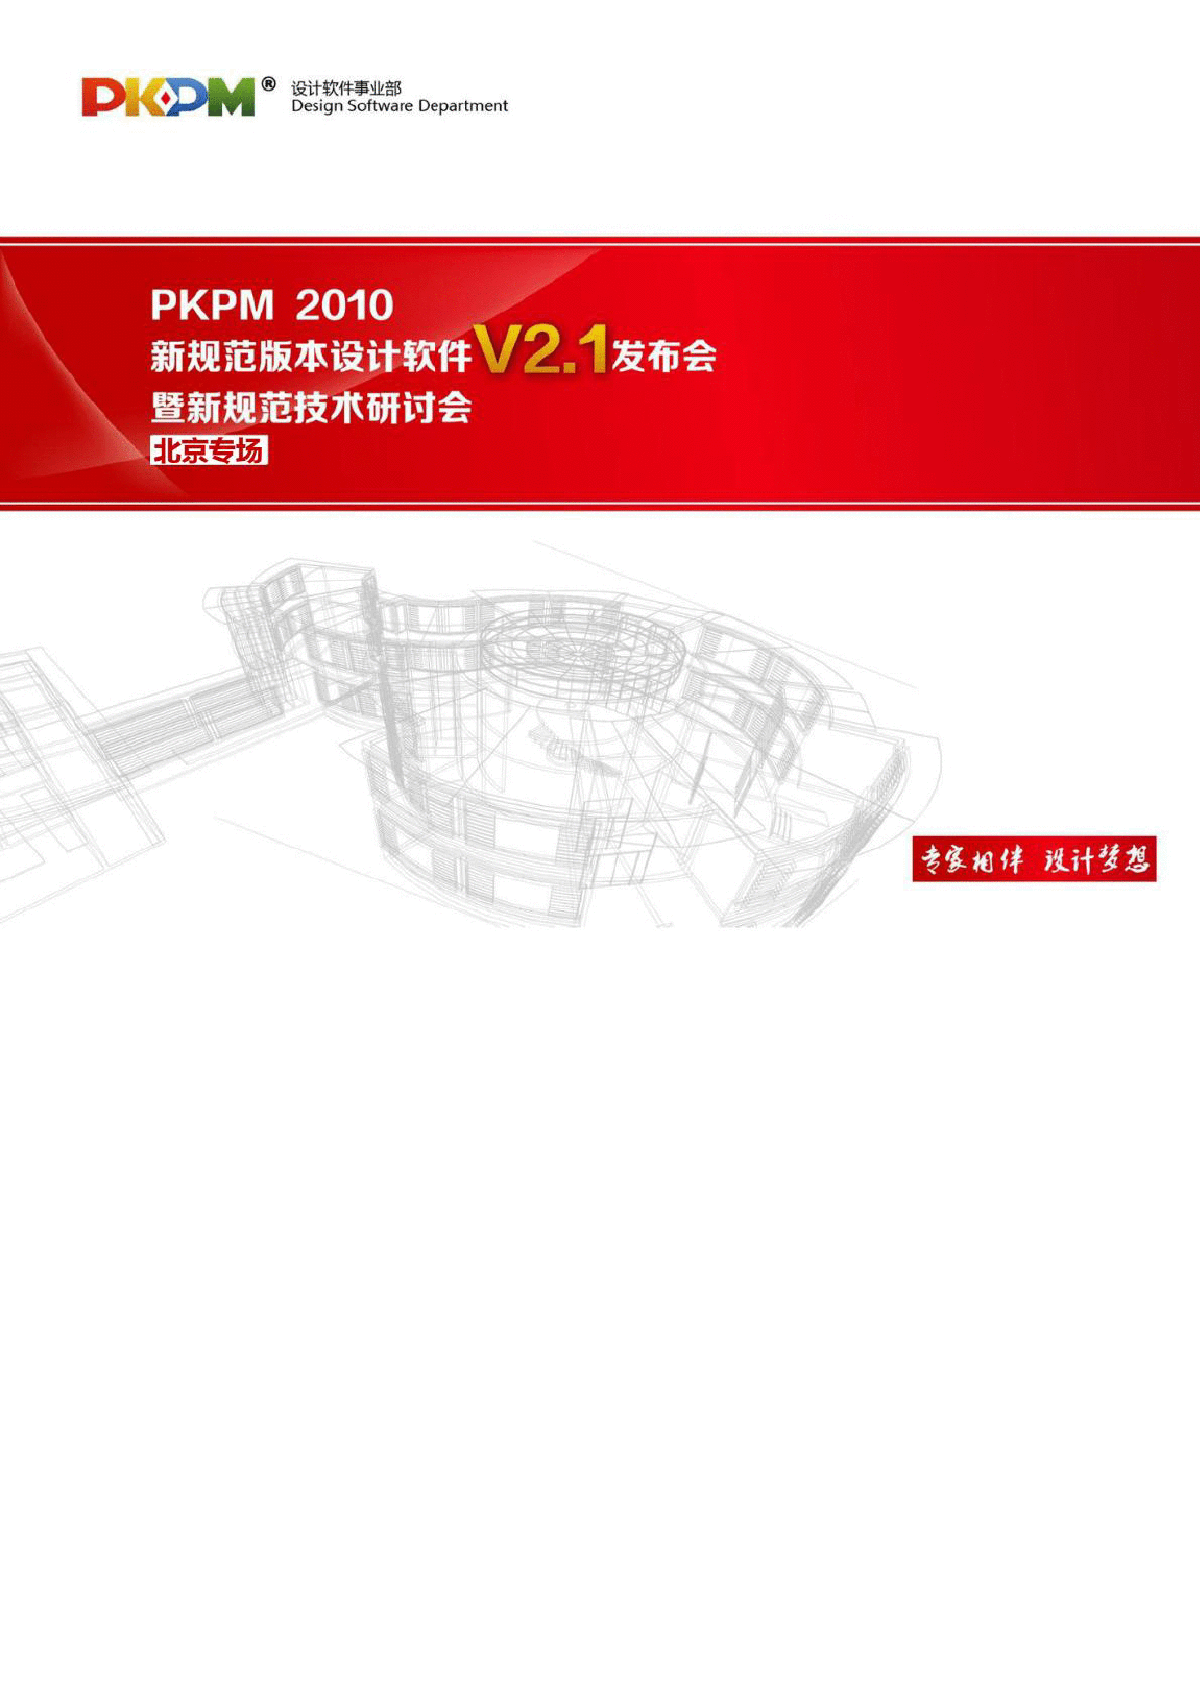 PKPM2010V2.1版PAAD说明